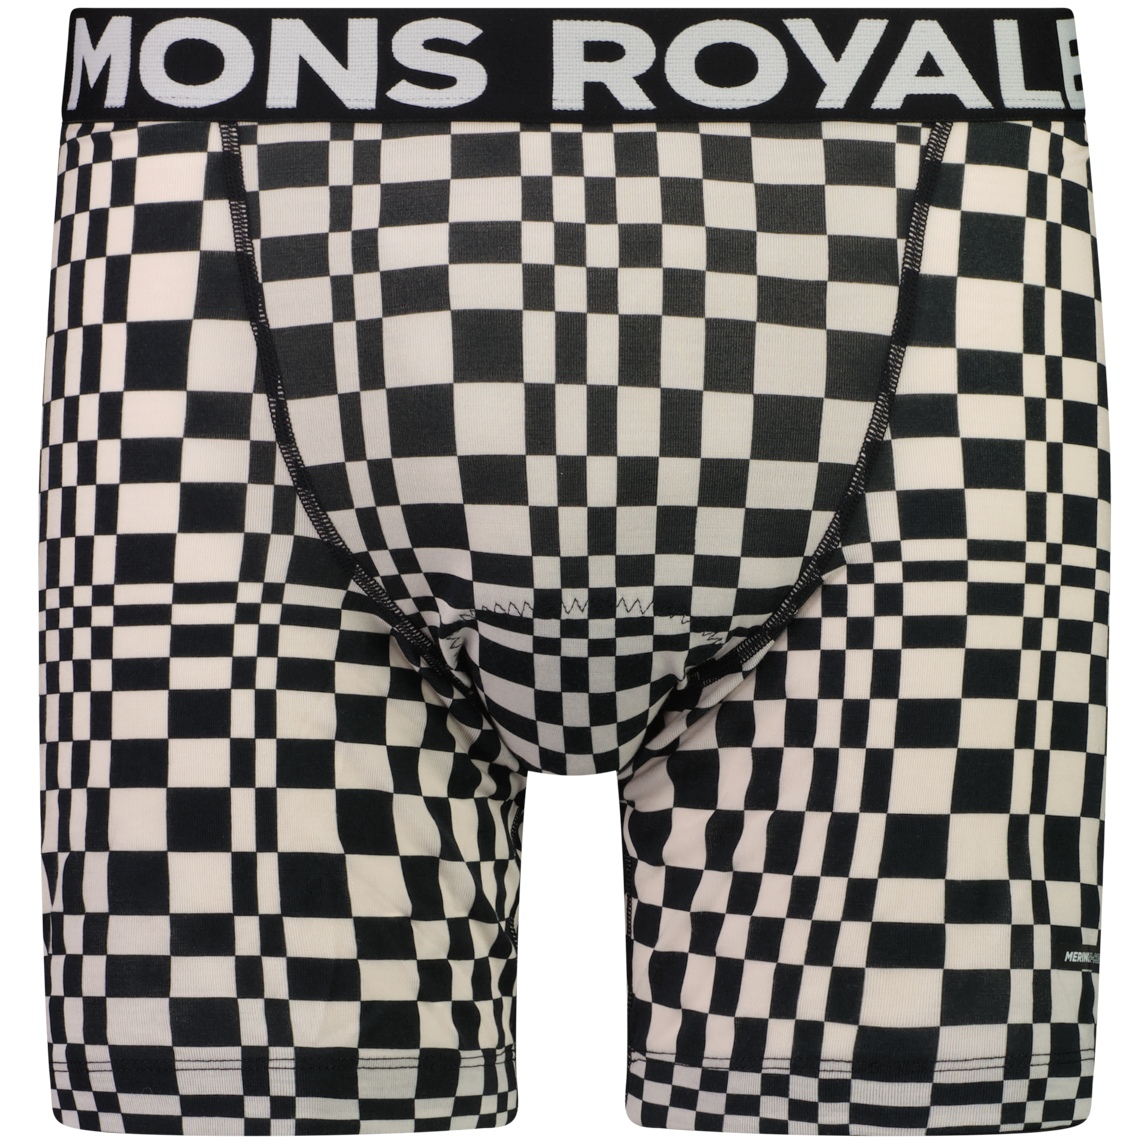 Produktbild von Mons Royale Low Pro Merino Air-Con MTB Unterhose Herren - checkers